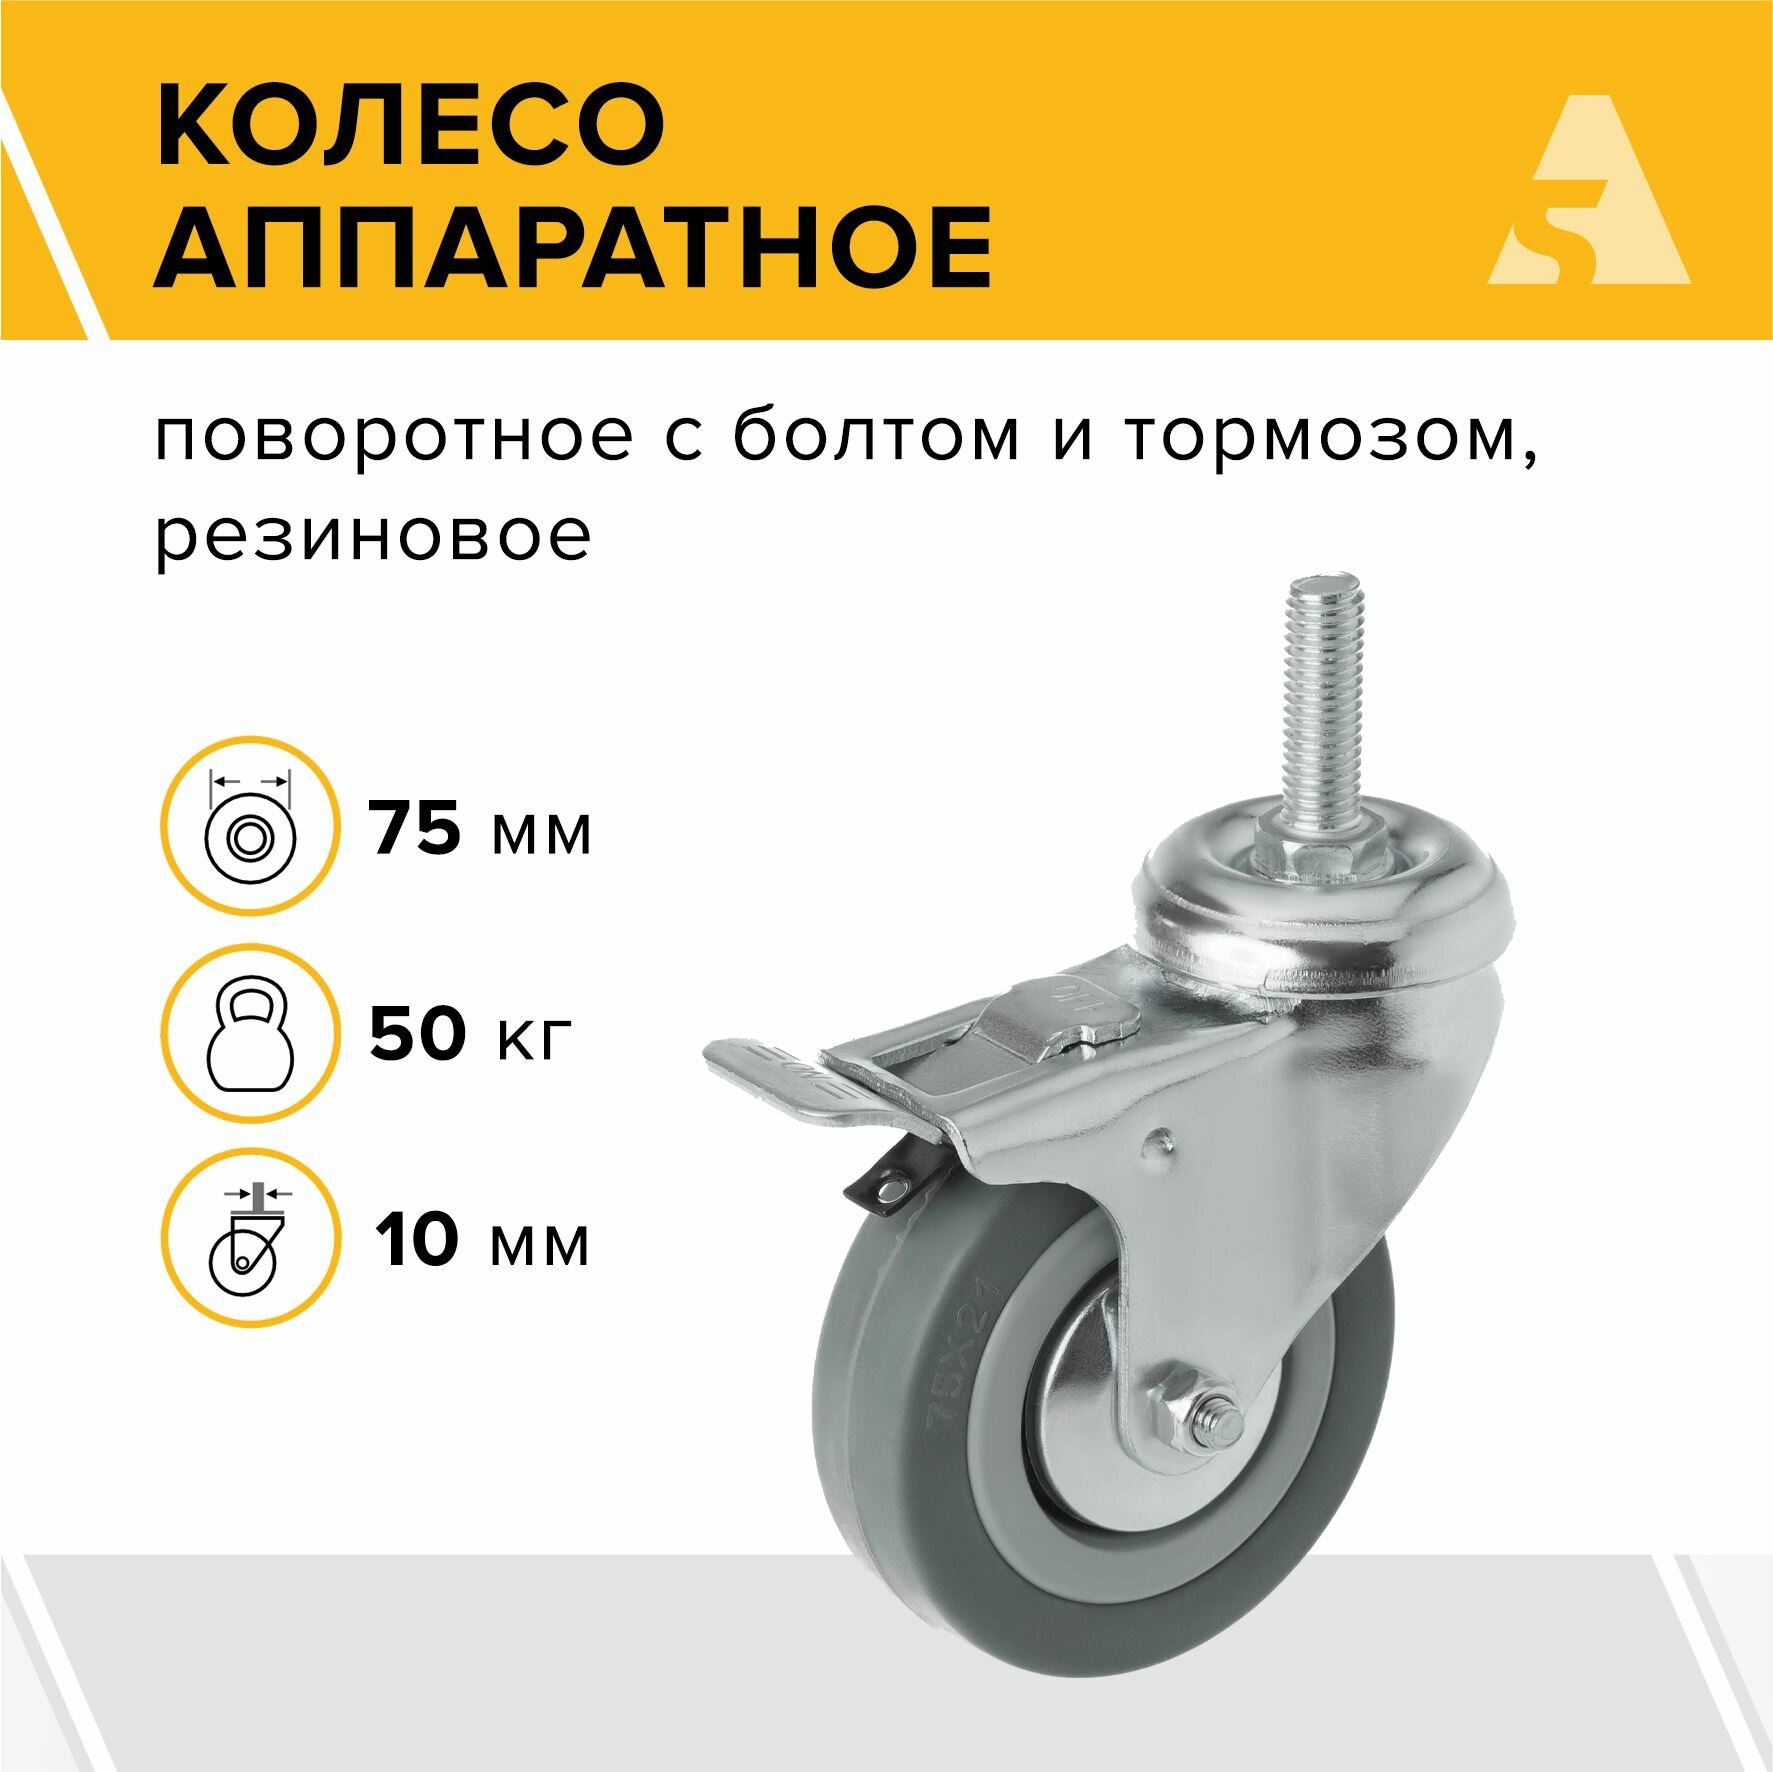 Аппаратное колесо поворотное с болтом и тормозом SCtgb 93 (10) 75 мм, 50 кг